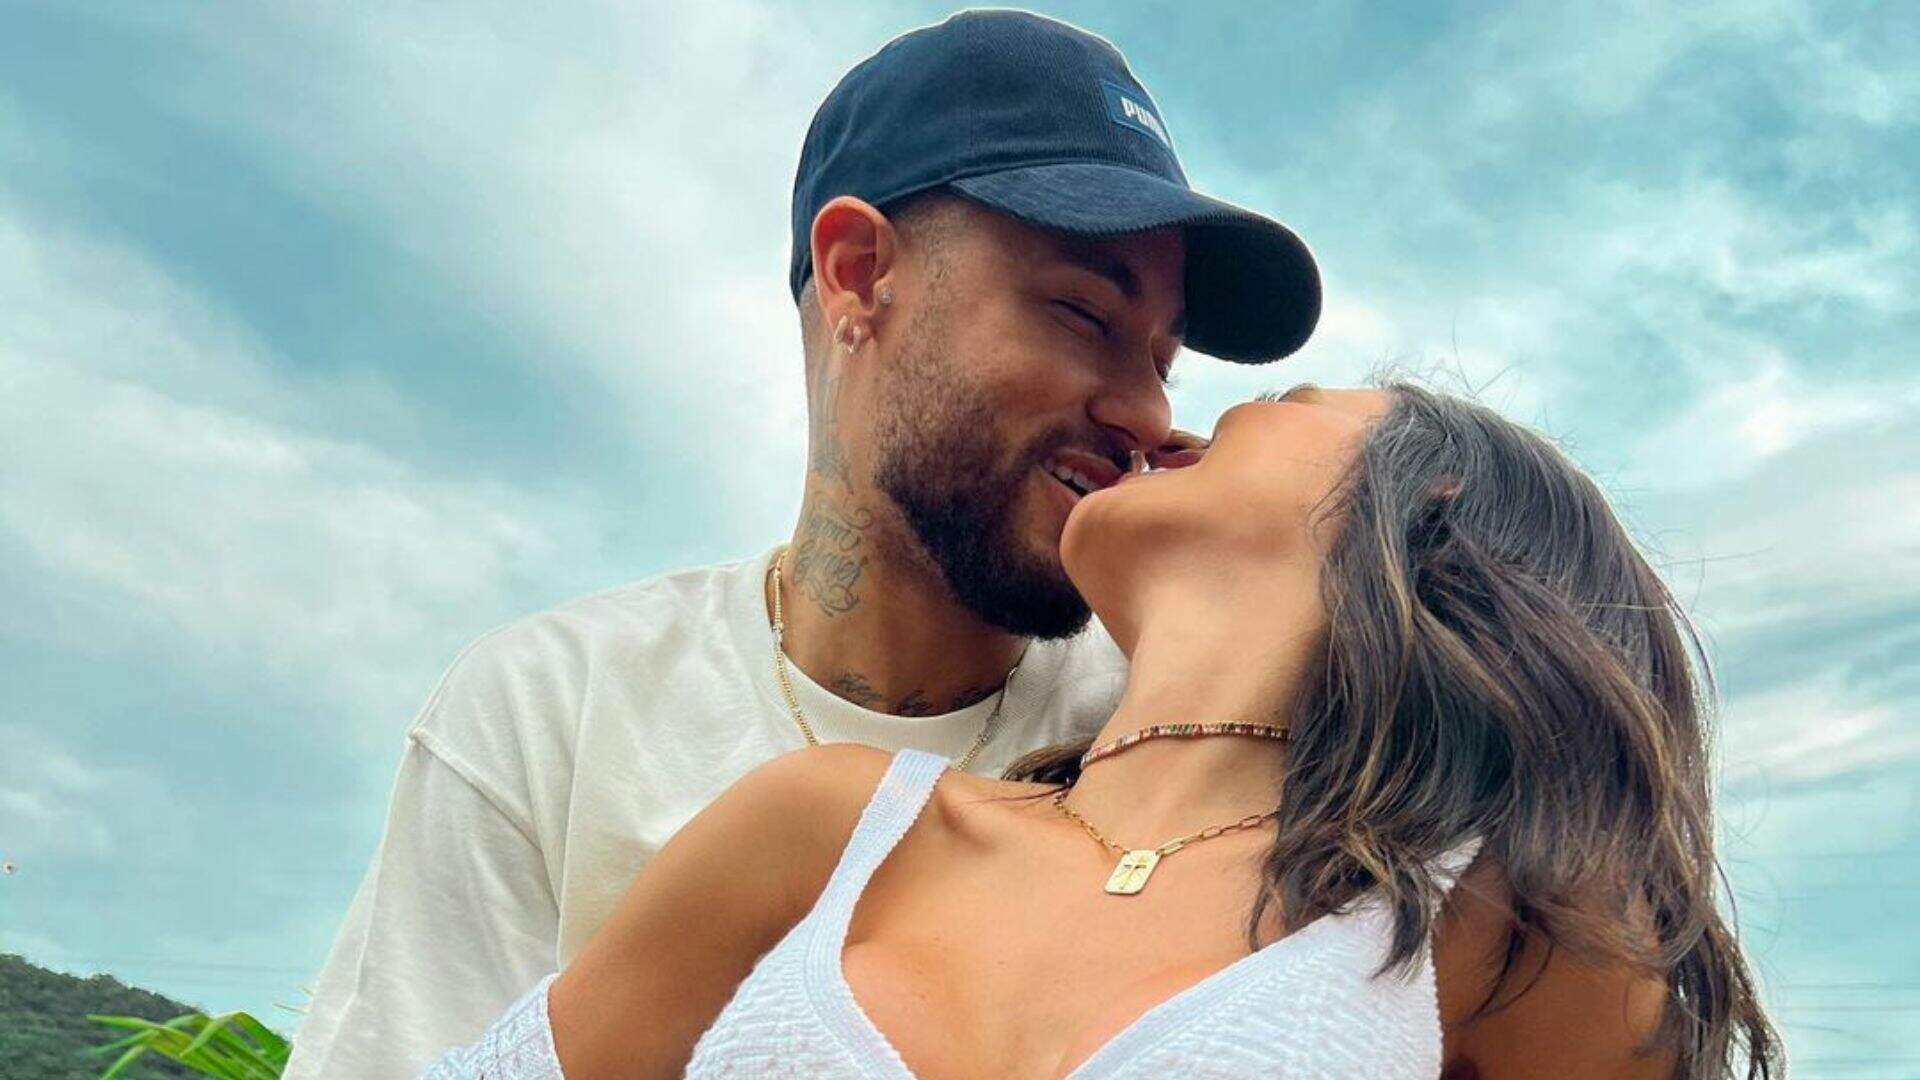 Juntos ou separados? Lene Sensitiva prevê futuro do relacionamento de Bruna Biancardi e Neymar Jr. - Metropolitana FM